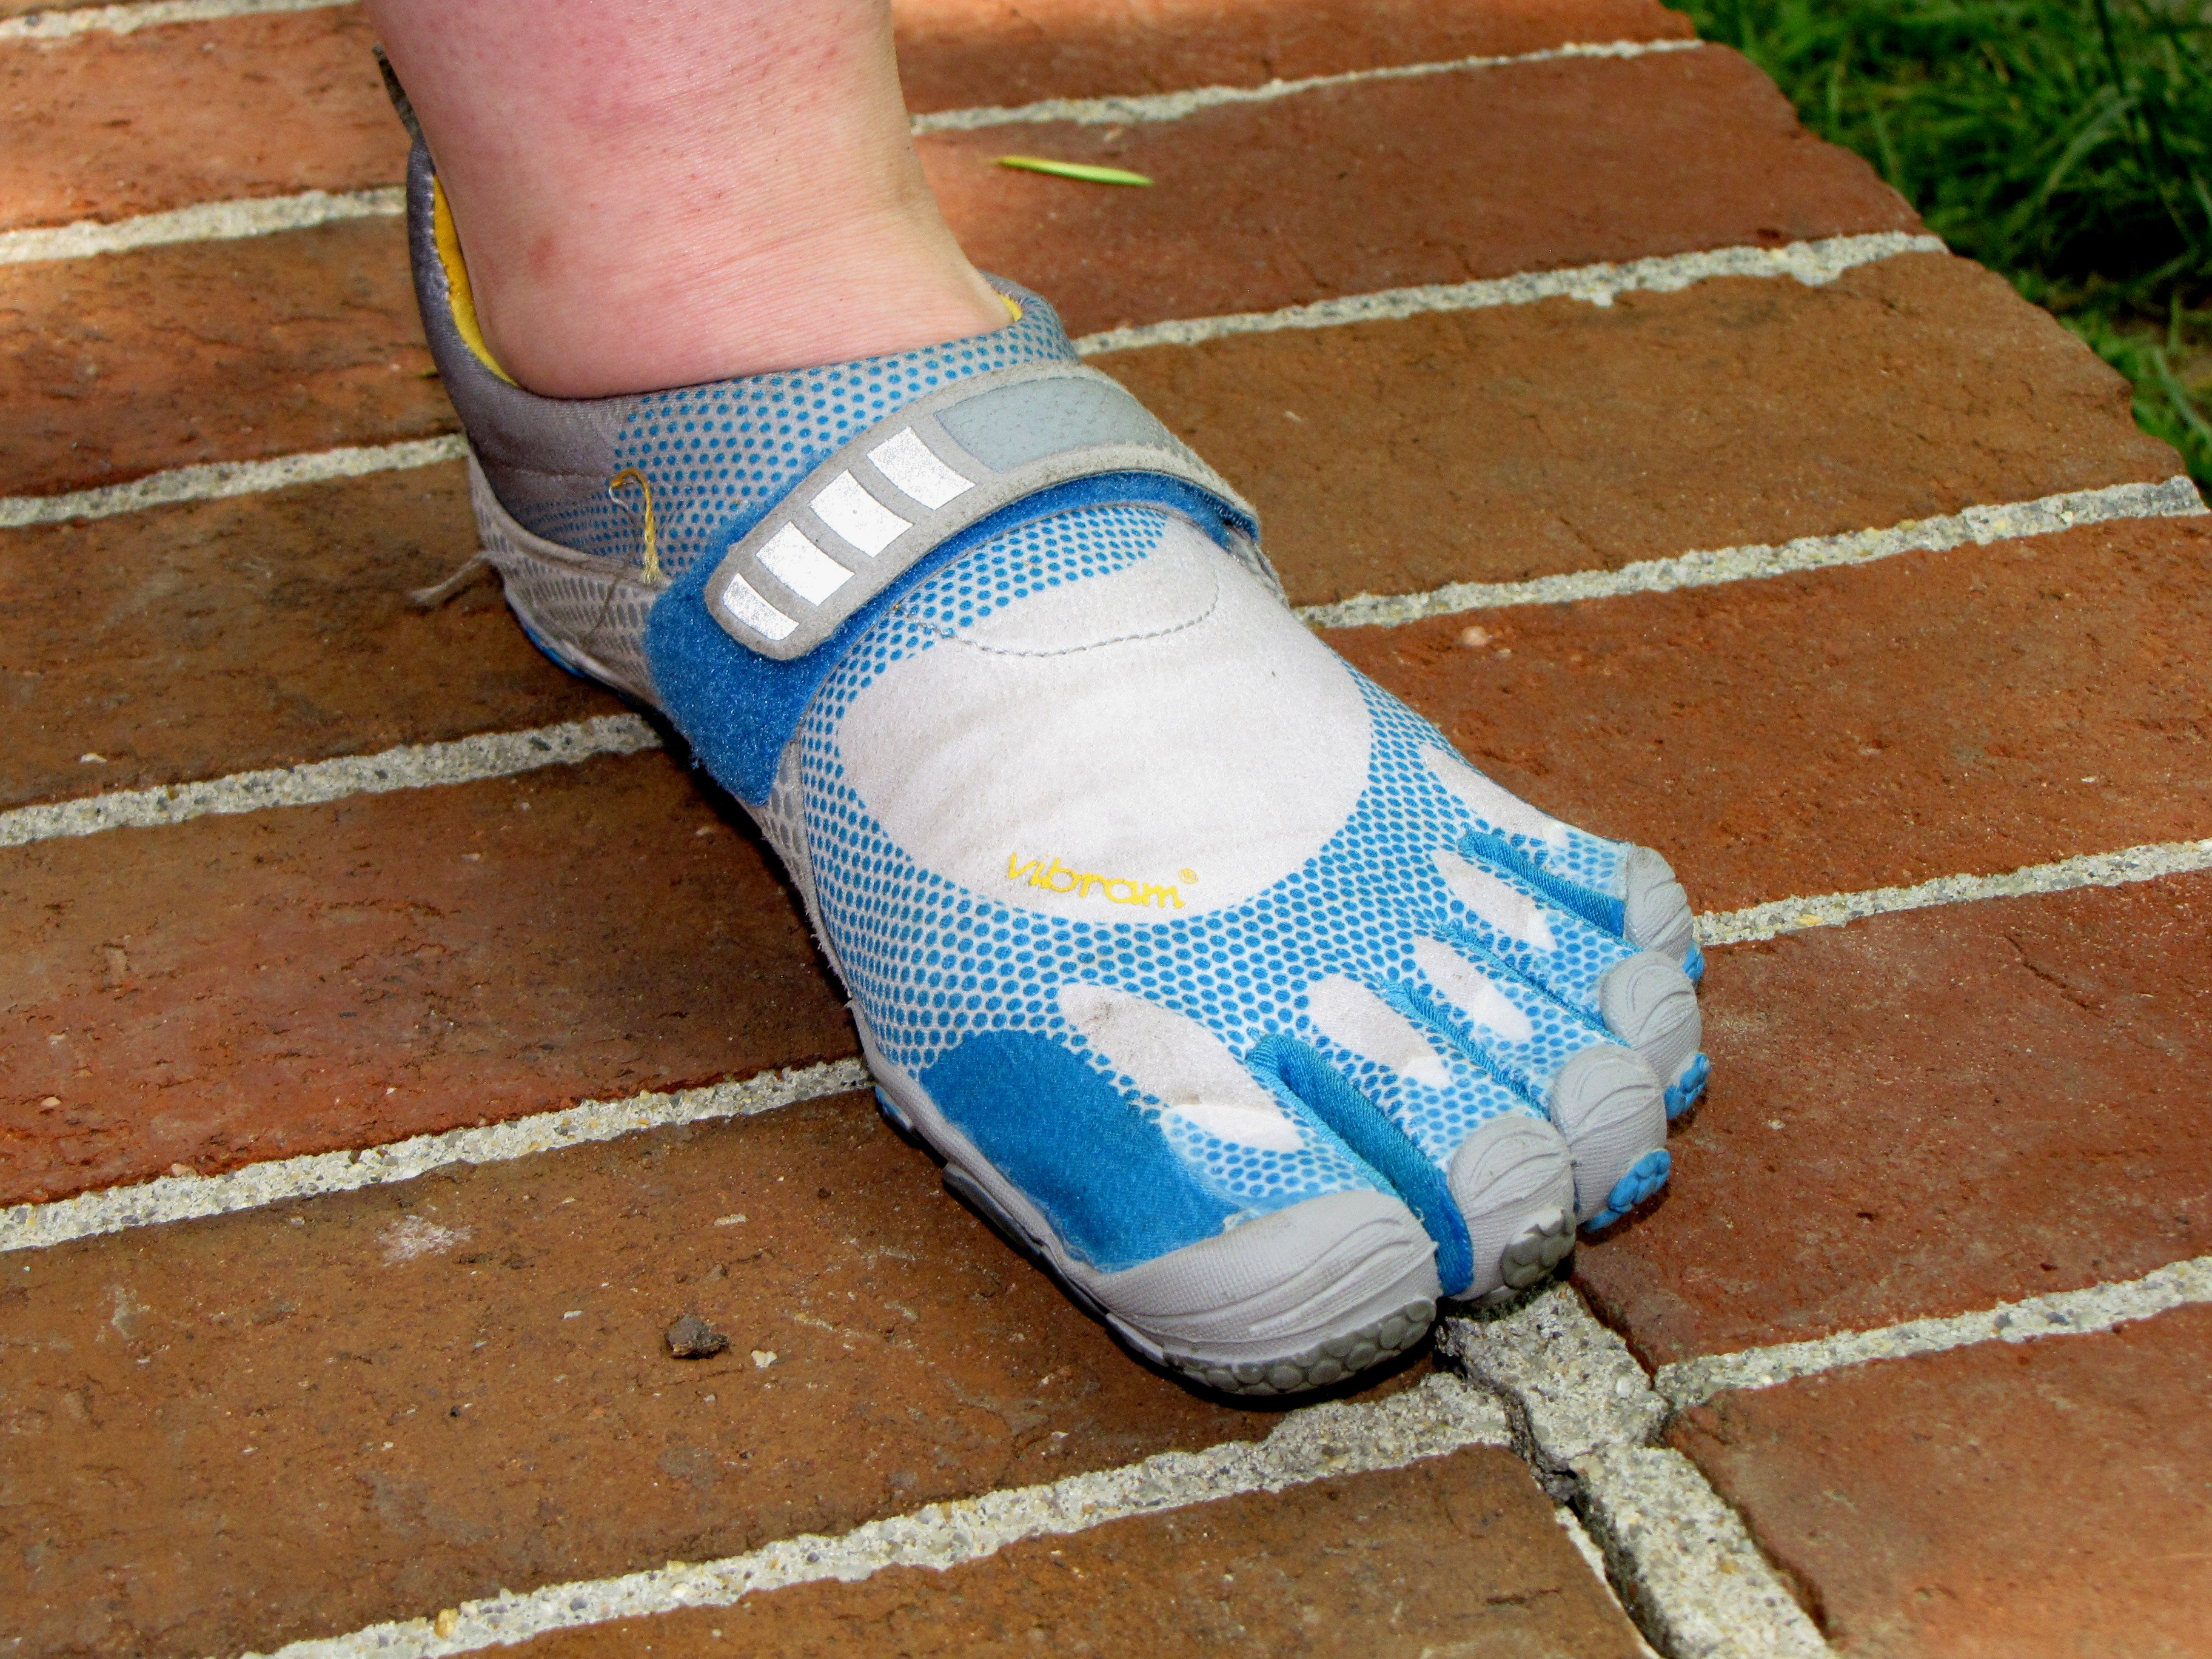 Calzado minimalista o barefoot- Qué es, características